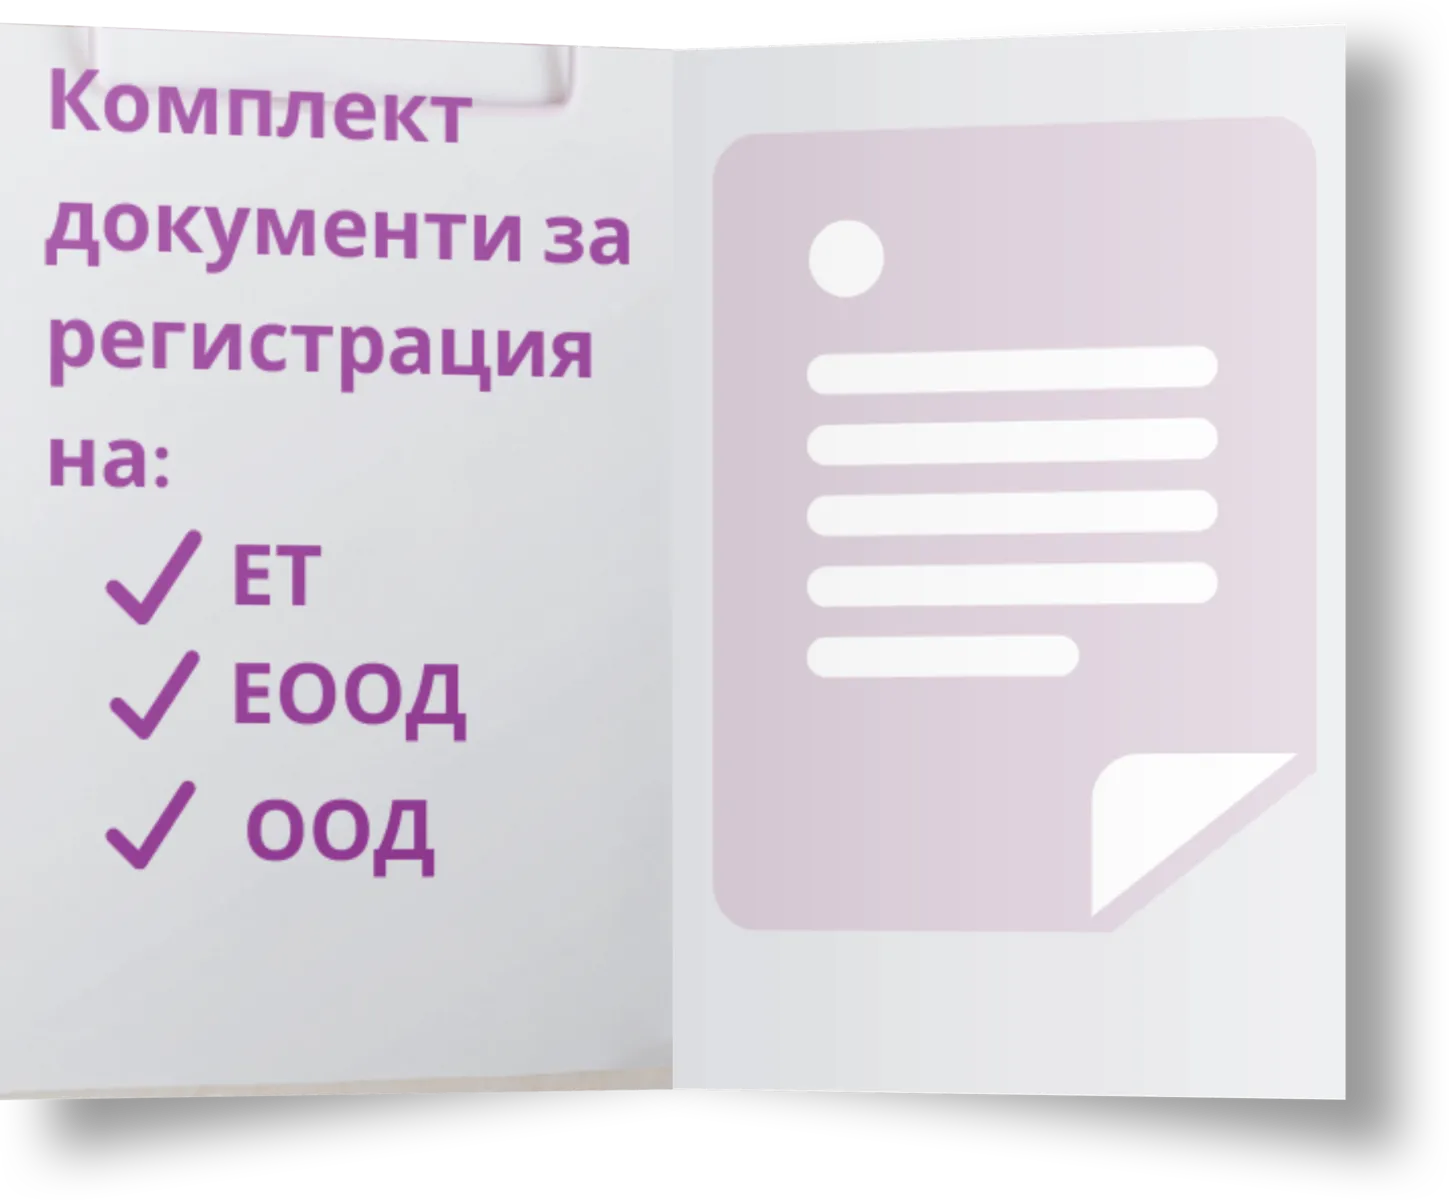 Комплект документи за регистрация на ЕТ, ЕООД и ООД